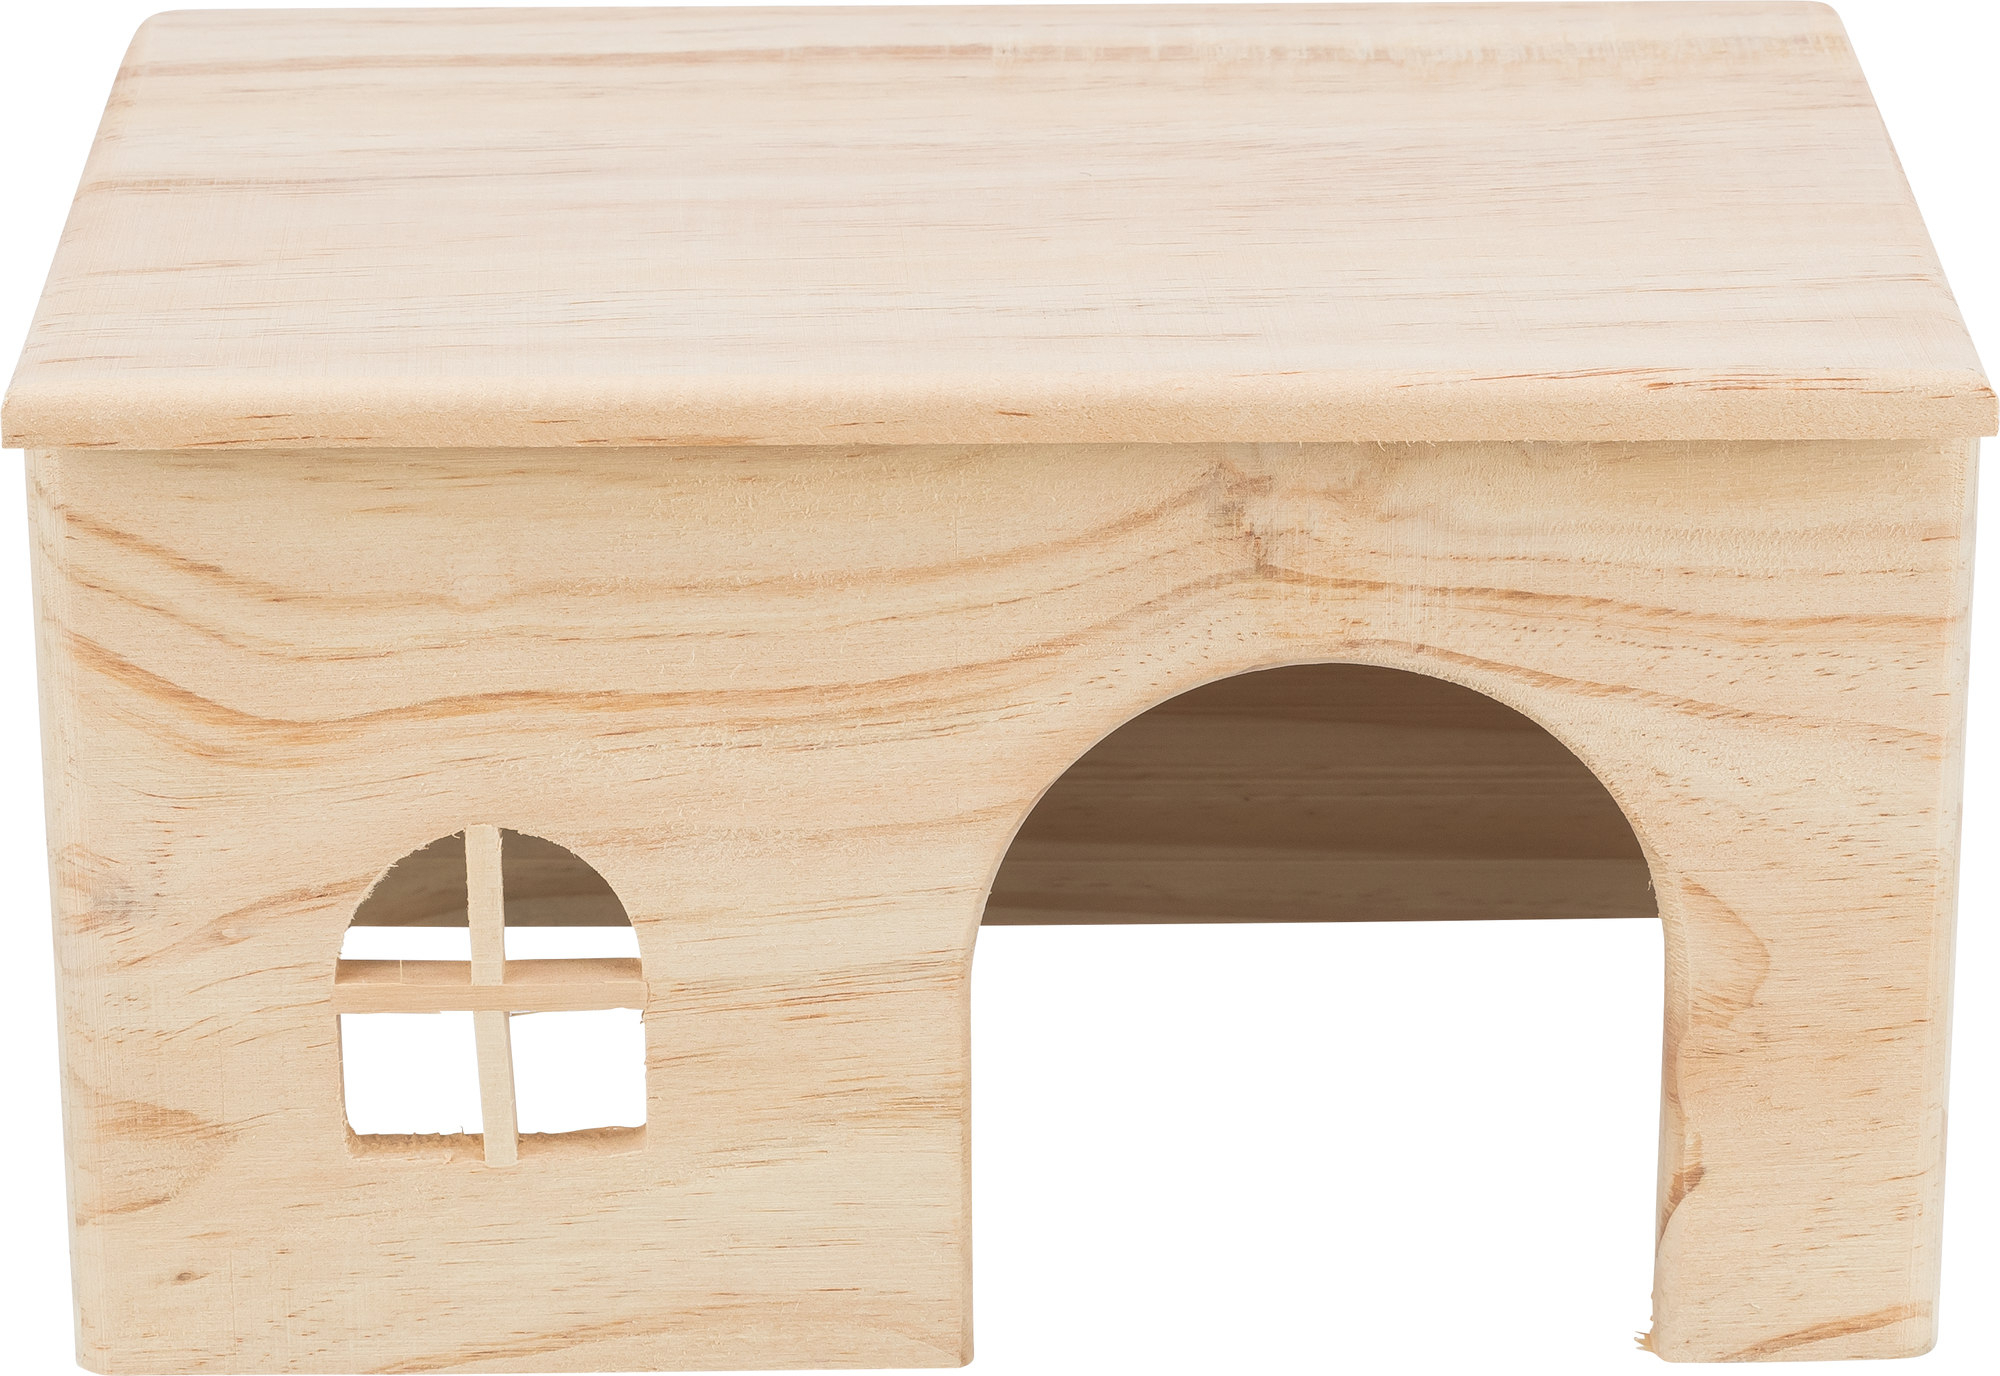 Casa de madeira telhado plano - vários tamanhos disponíveis